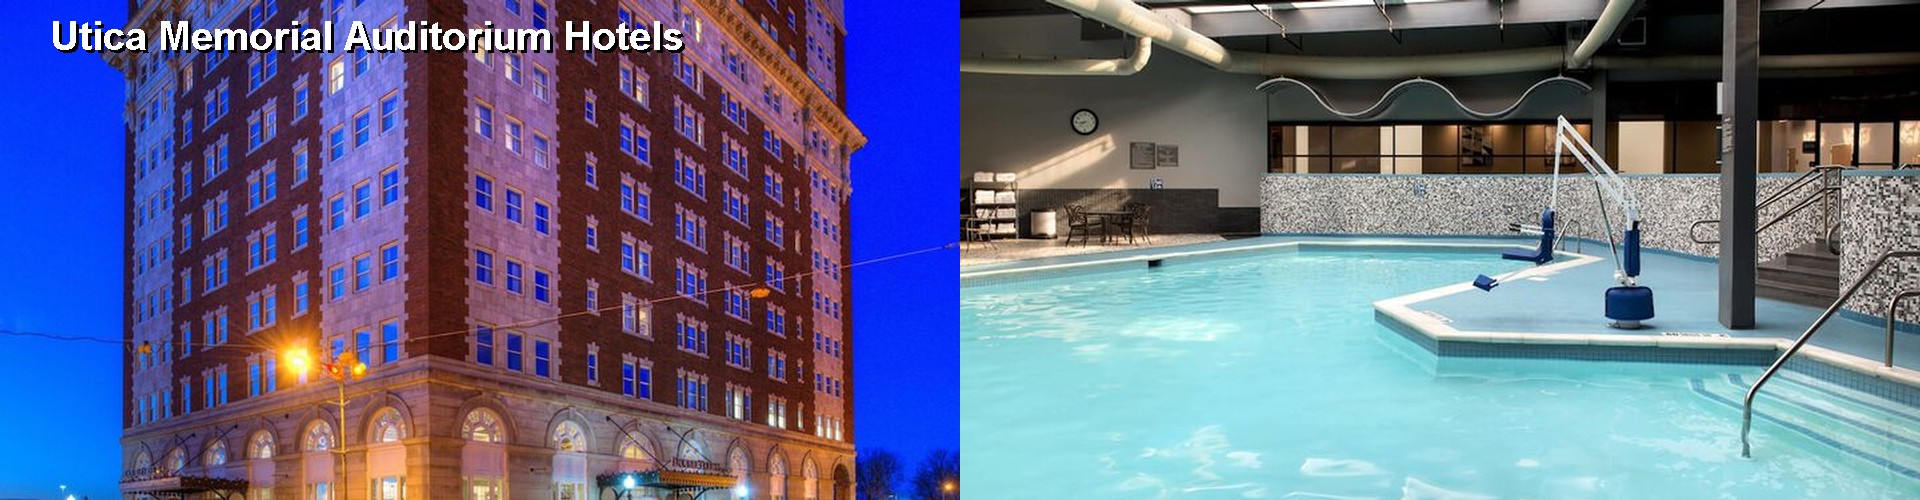 5 Best Hotels near Utica Memorial Auditorium